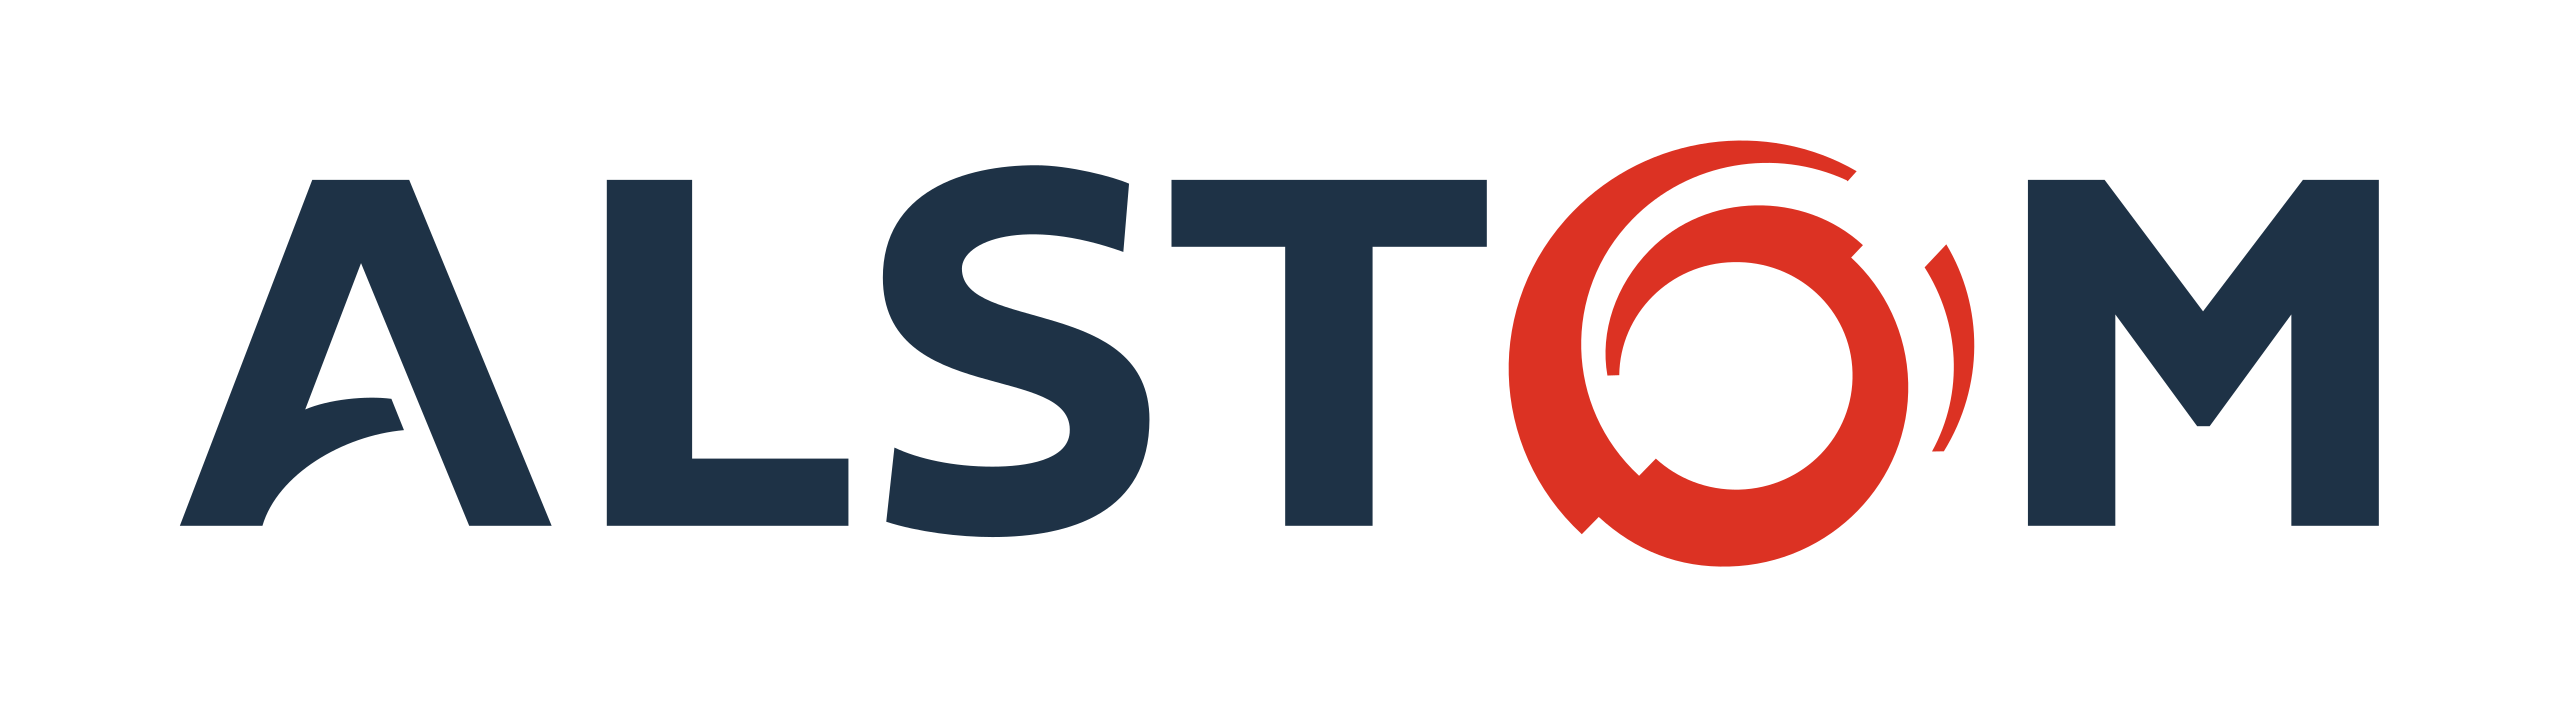 Alstom_logo.svg